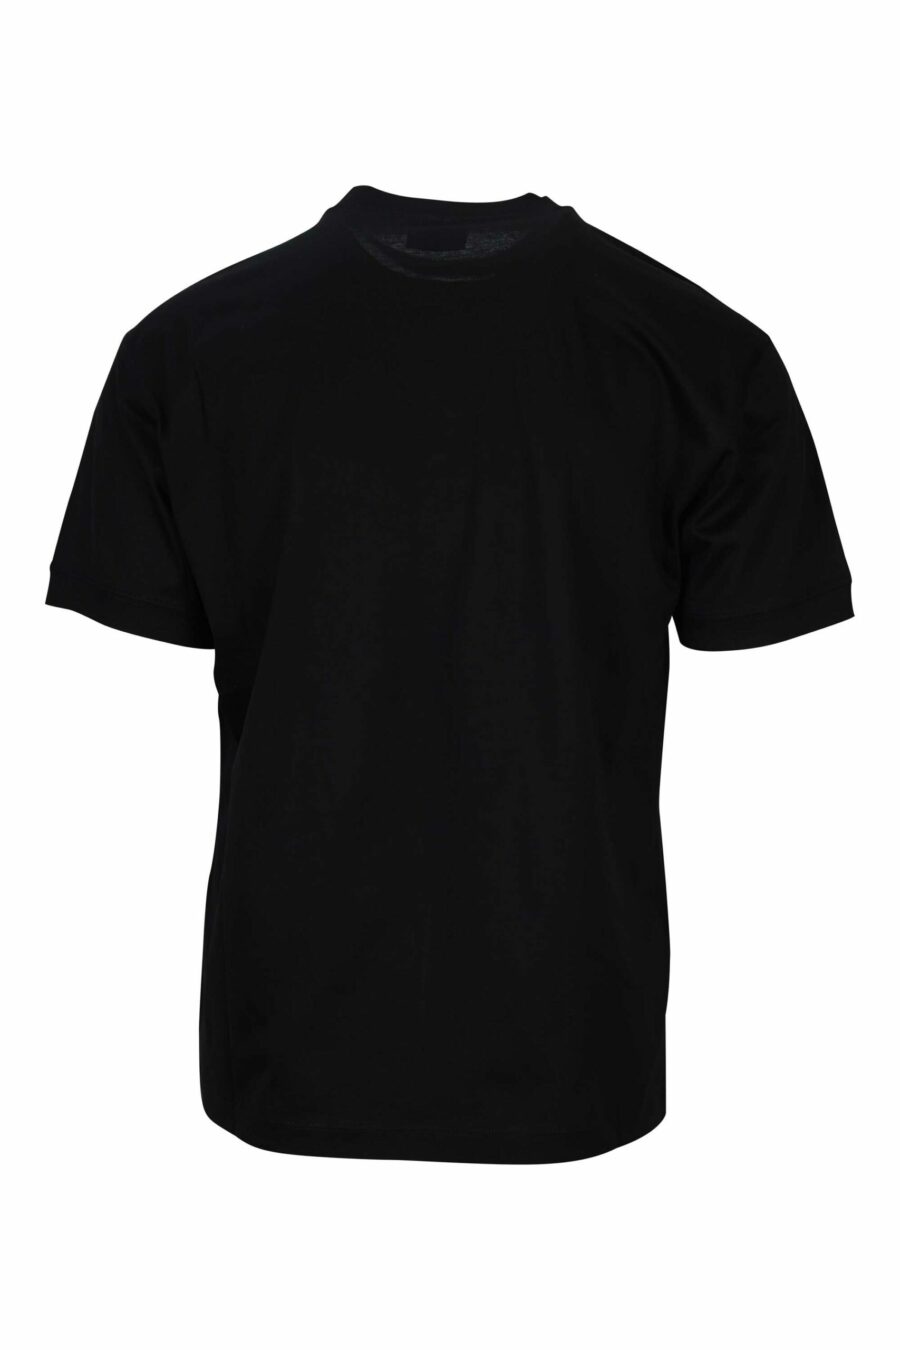 T-shirt noir avec maxilogo "lux identity" dans une boîte verte - 8058947495726 1 scaled